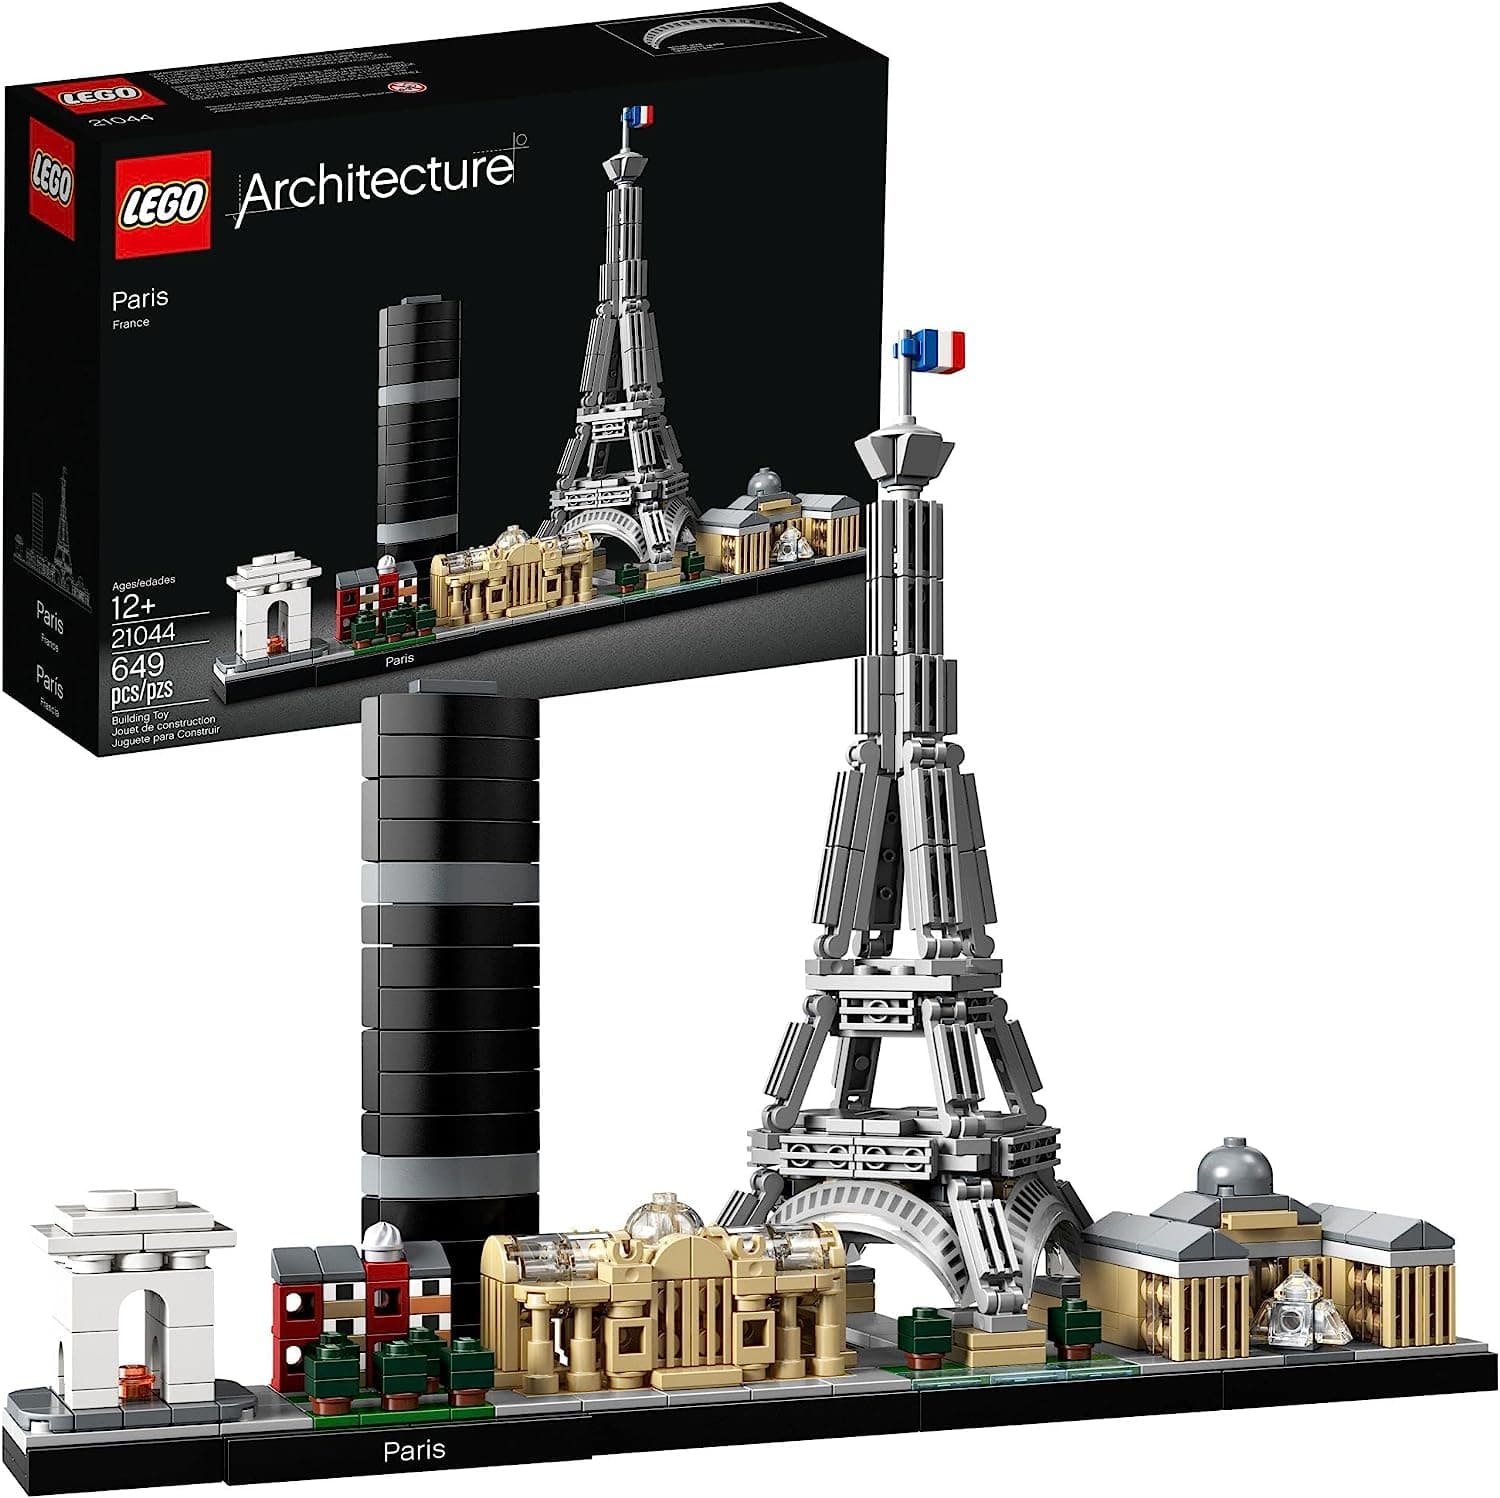 LEGO Architecture City Buildings Collection Paris Construction Kit 21044 LEGO